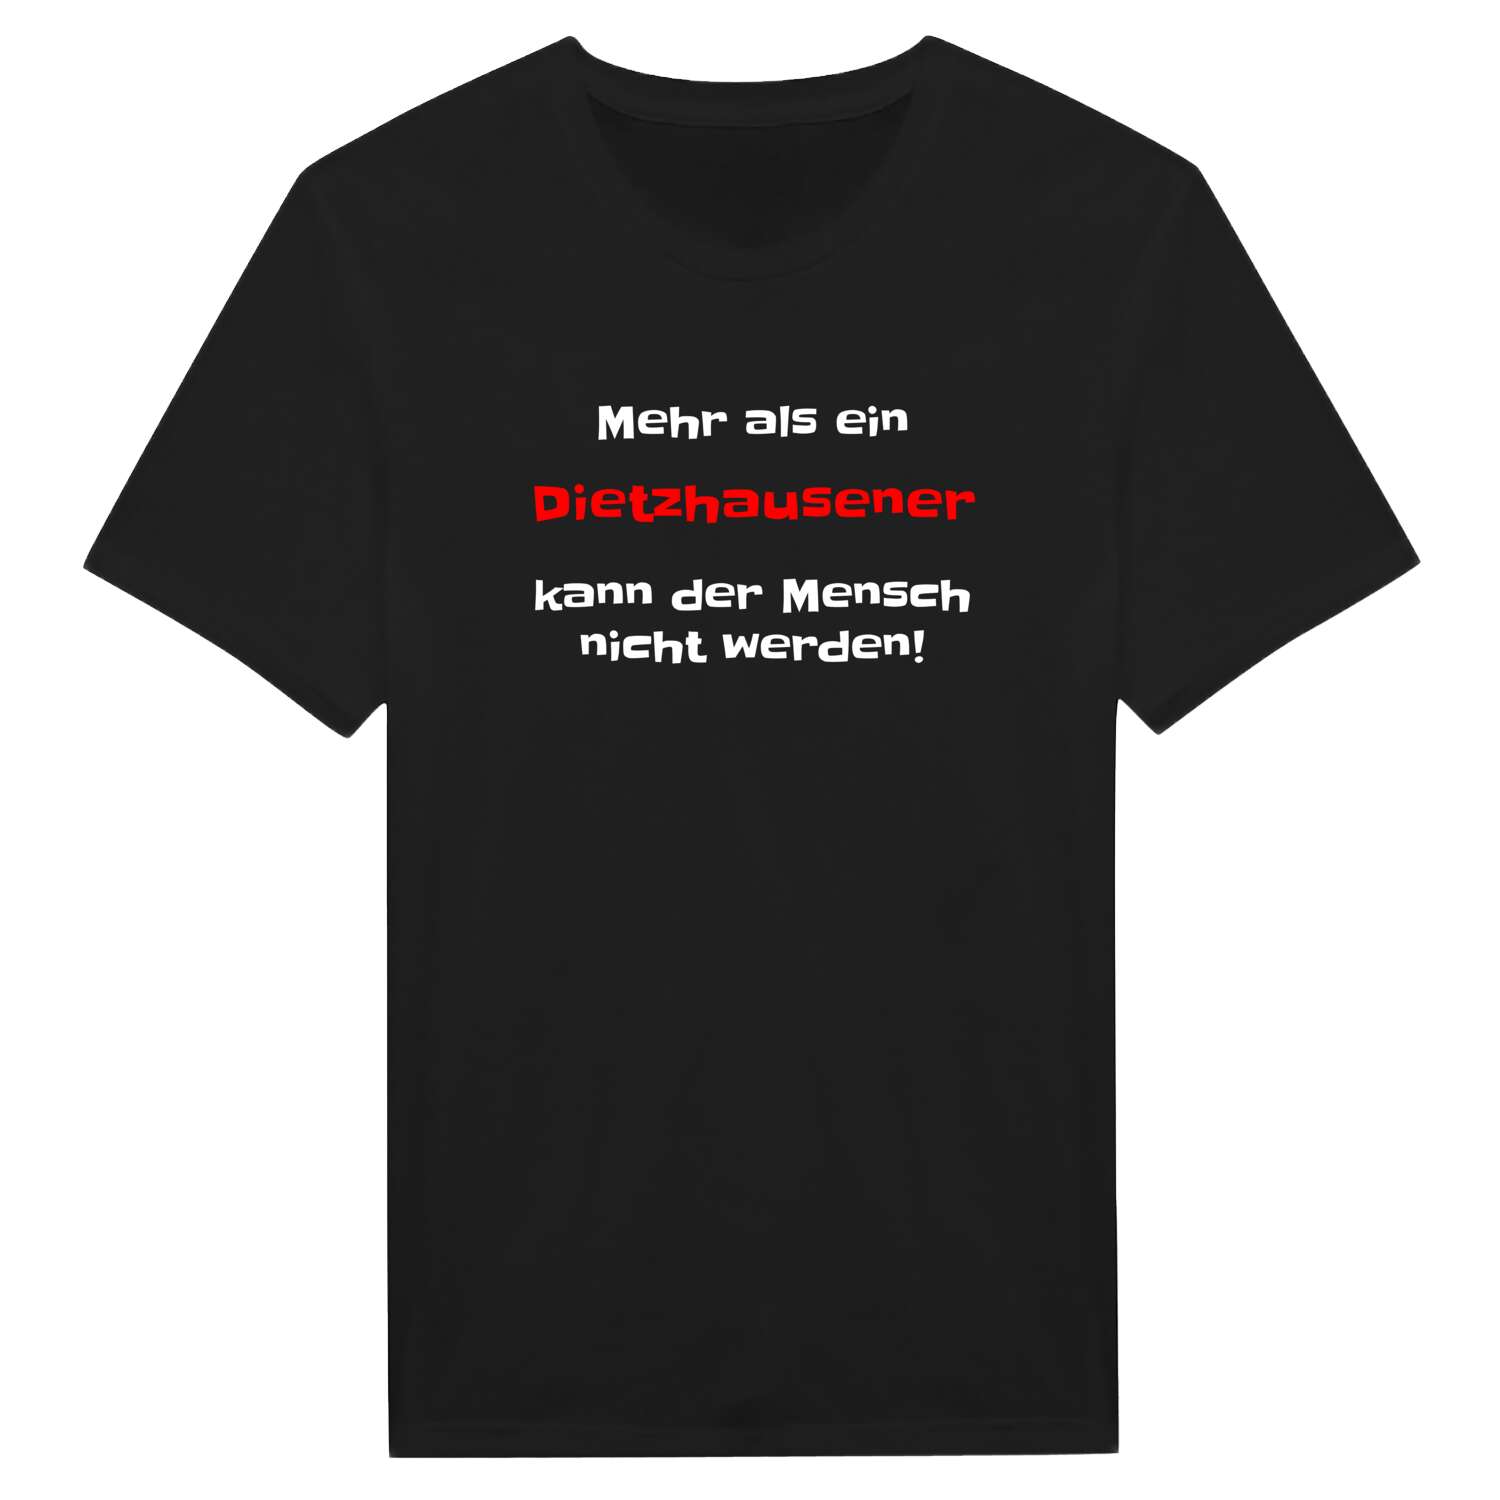 Dietzhausen T-Shirt »Mehr als ein«